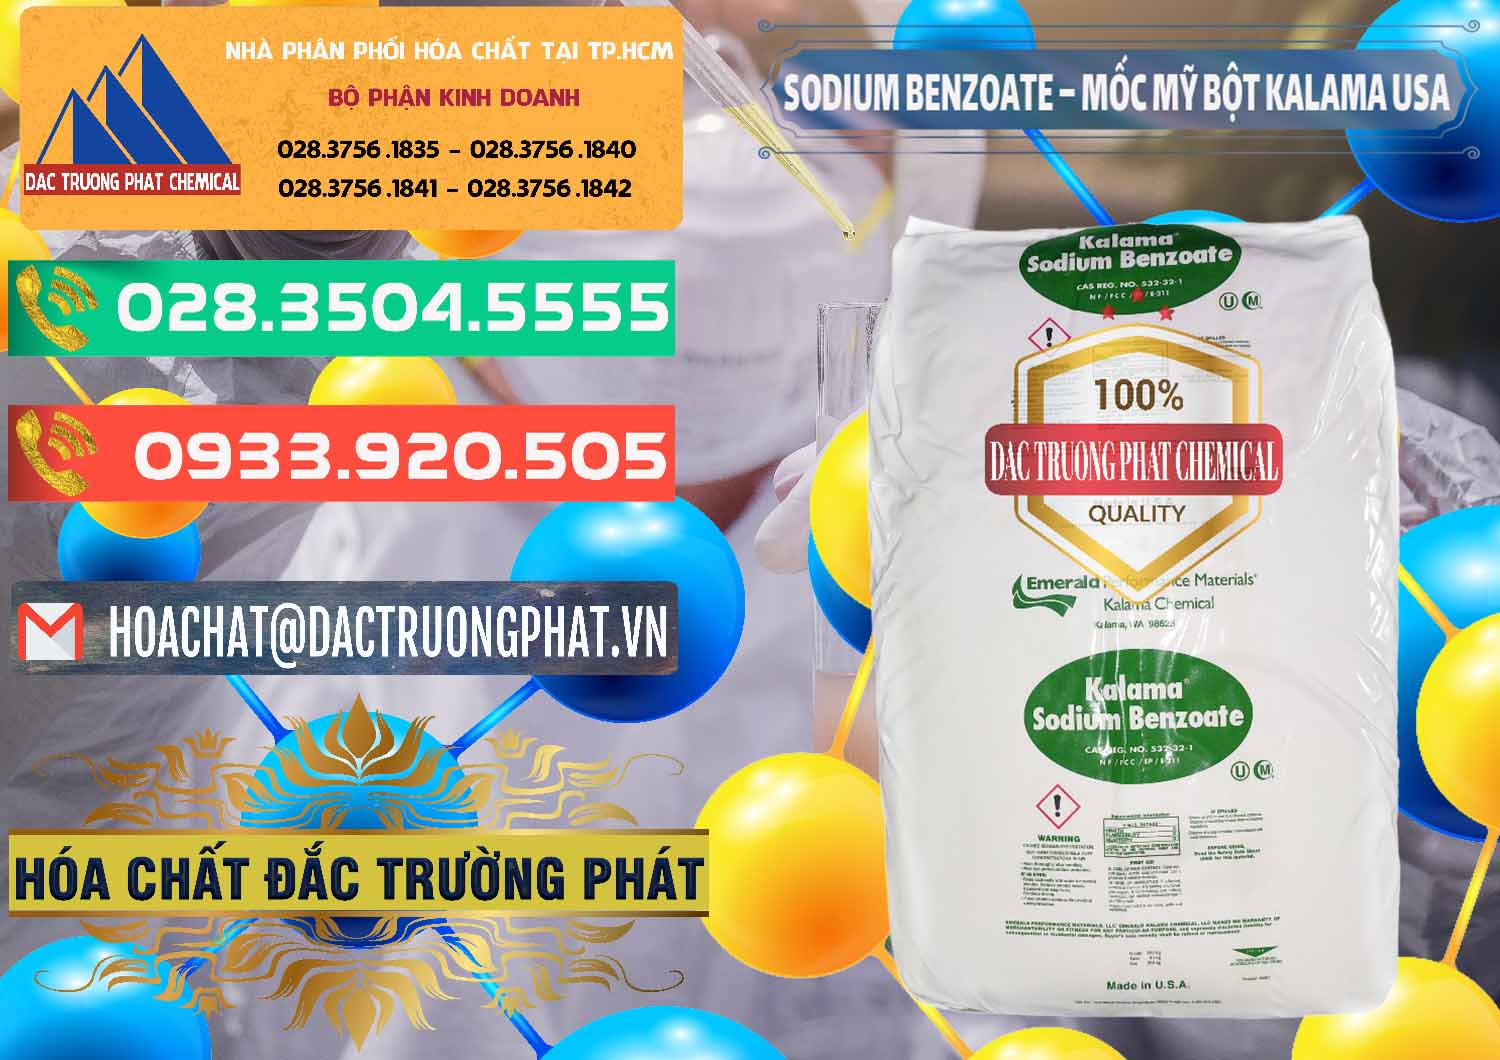 Nơi kinh doanh _ bán Sodium Benzoate - Mốc Bột Kalama Food Grade Mỹ Usa - 0136 - Cty chuyên phân phối - cung ứng hóa chất tại TP.HCM - congtyhoachat.com.vn